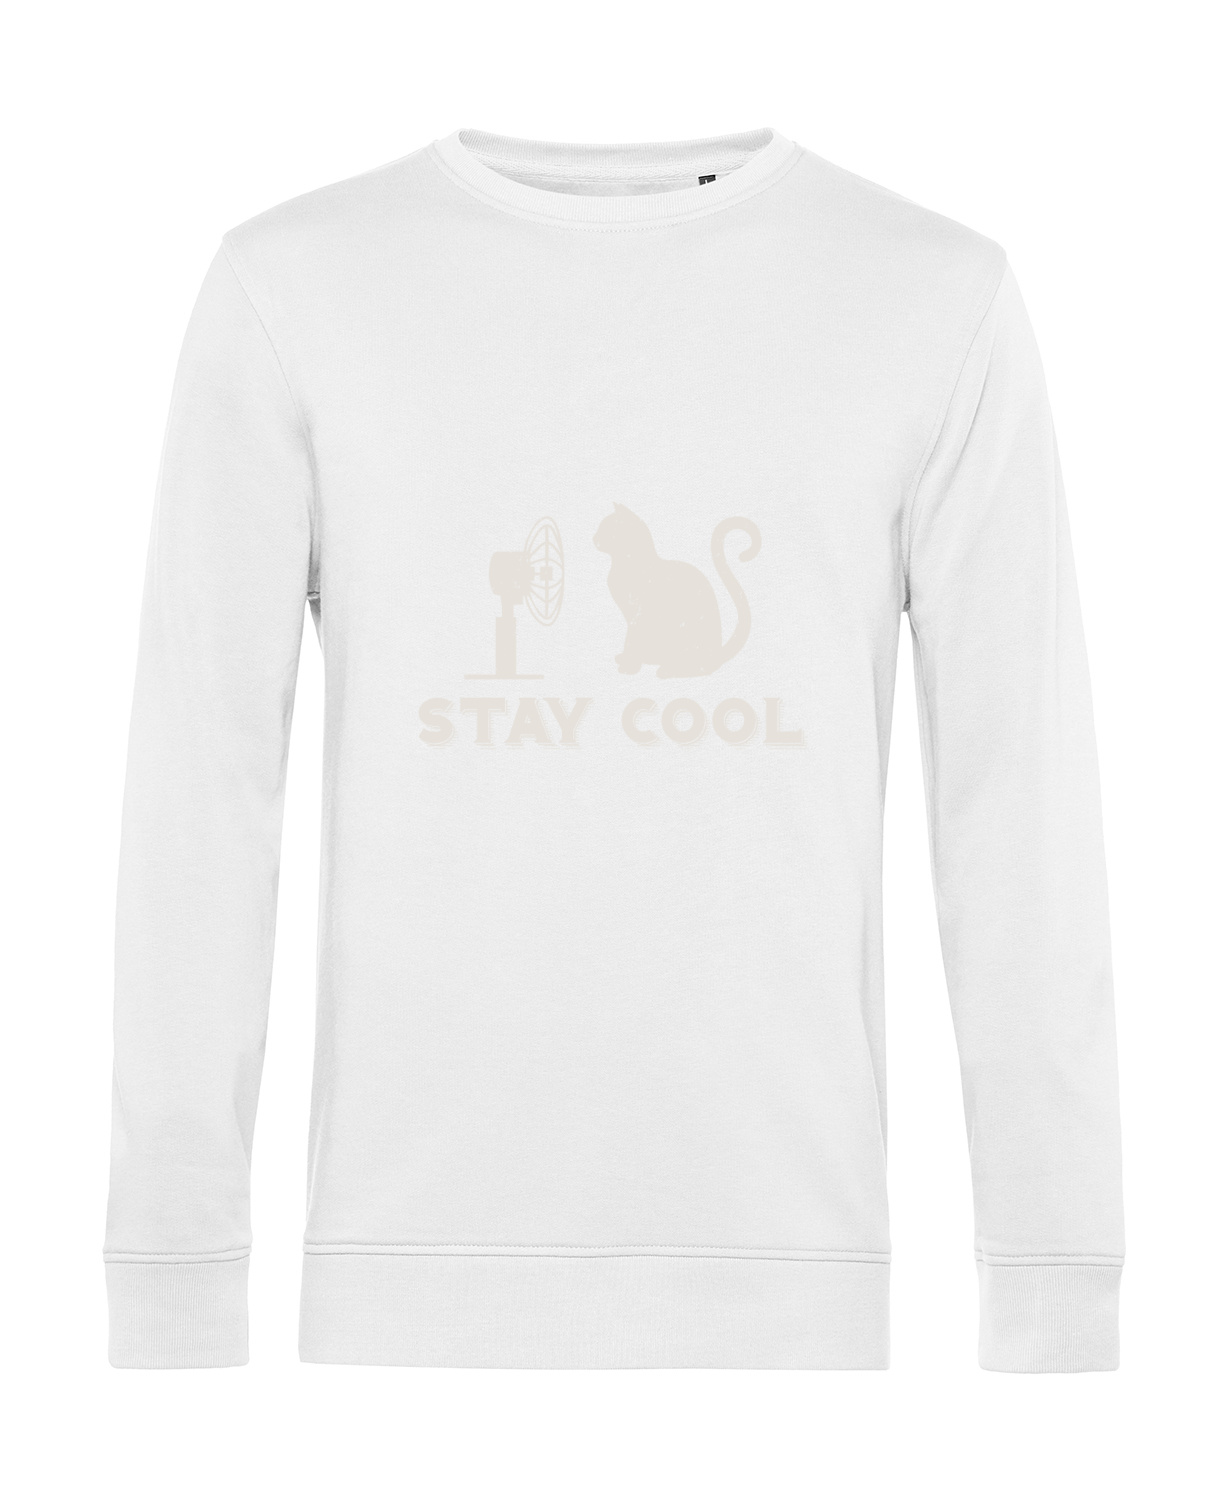 Nachhaltiges Sweatshirt Herren Katzen - Stay Cool